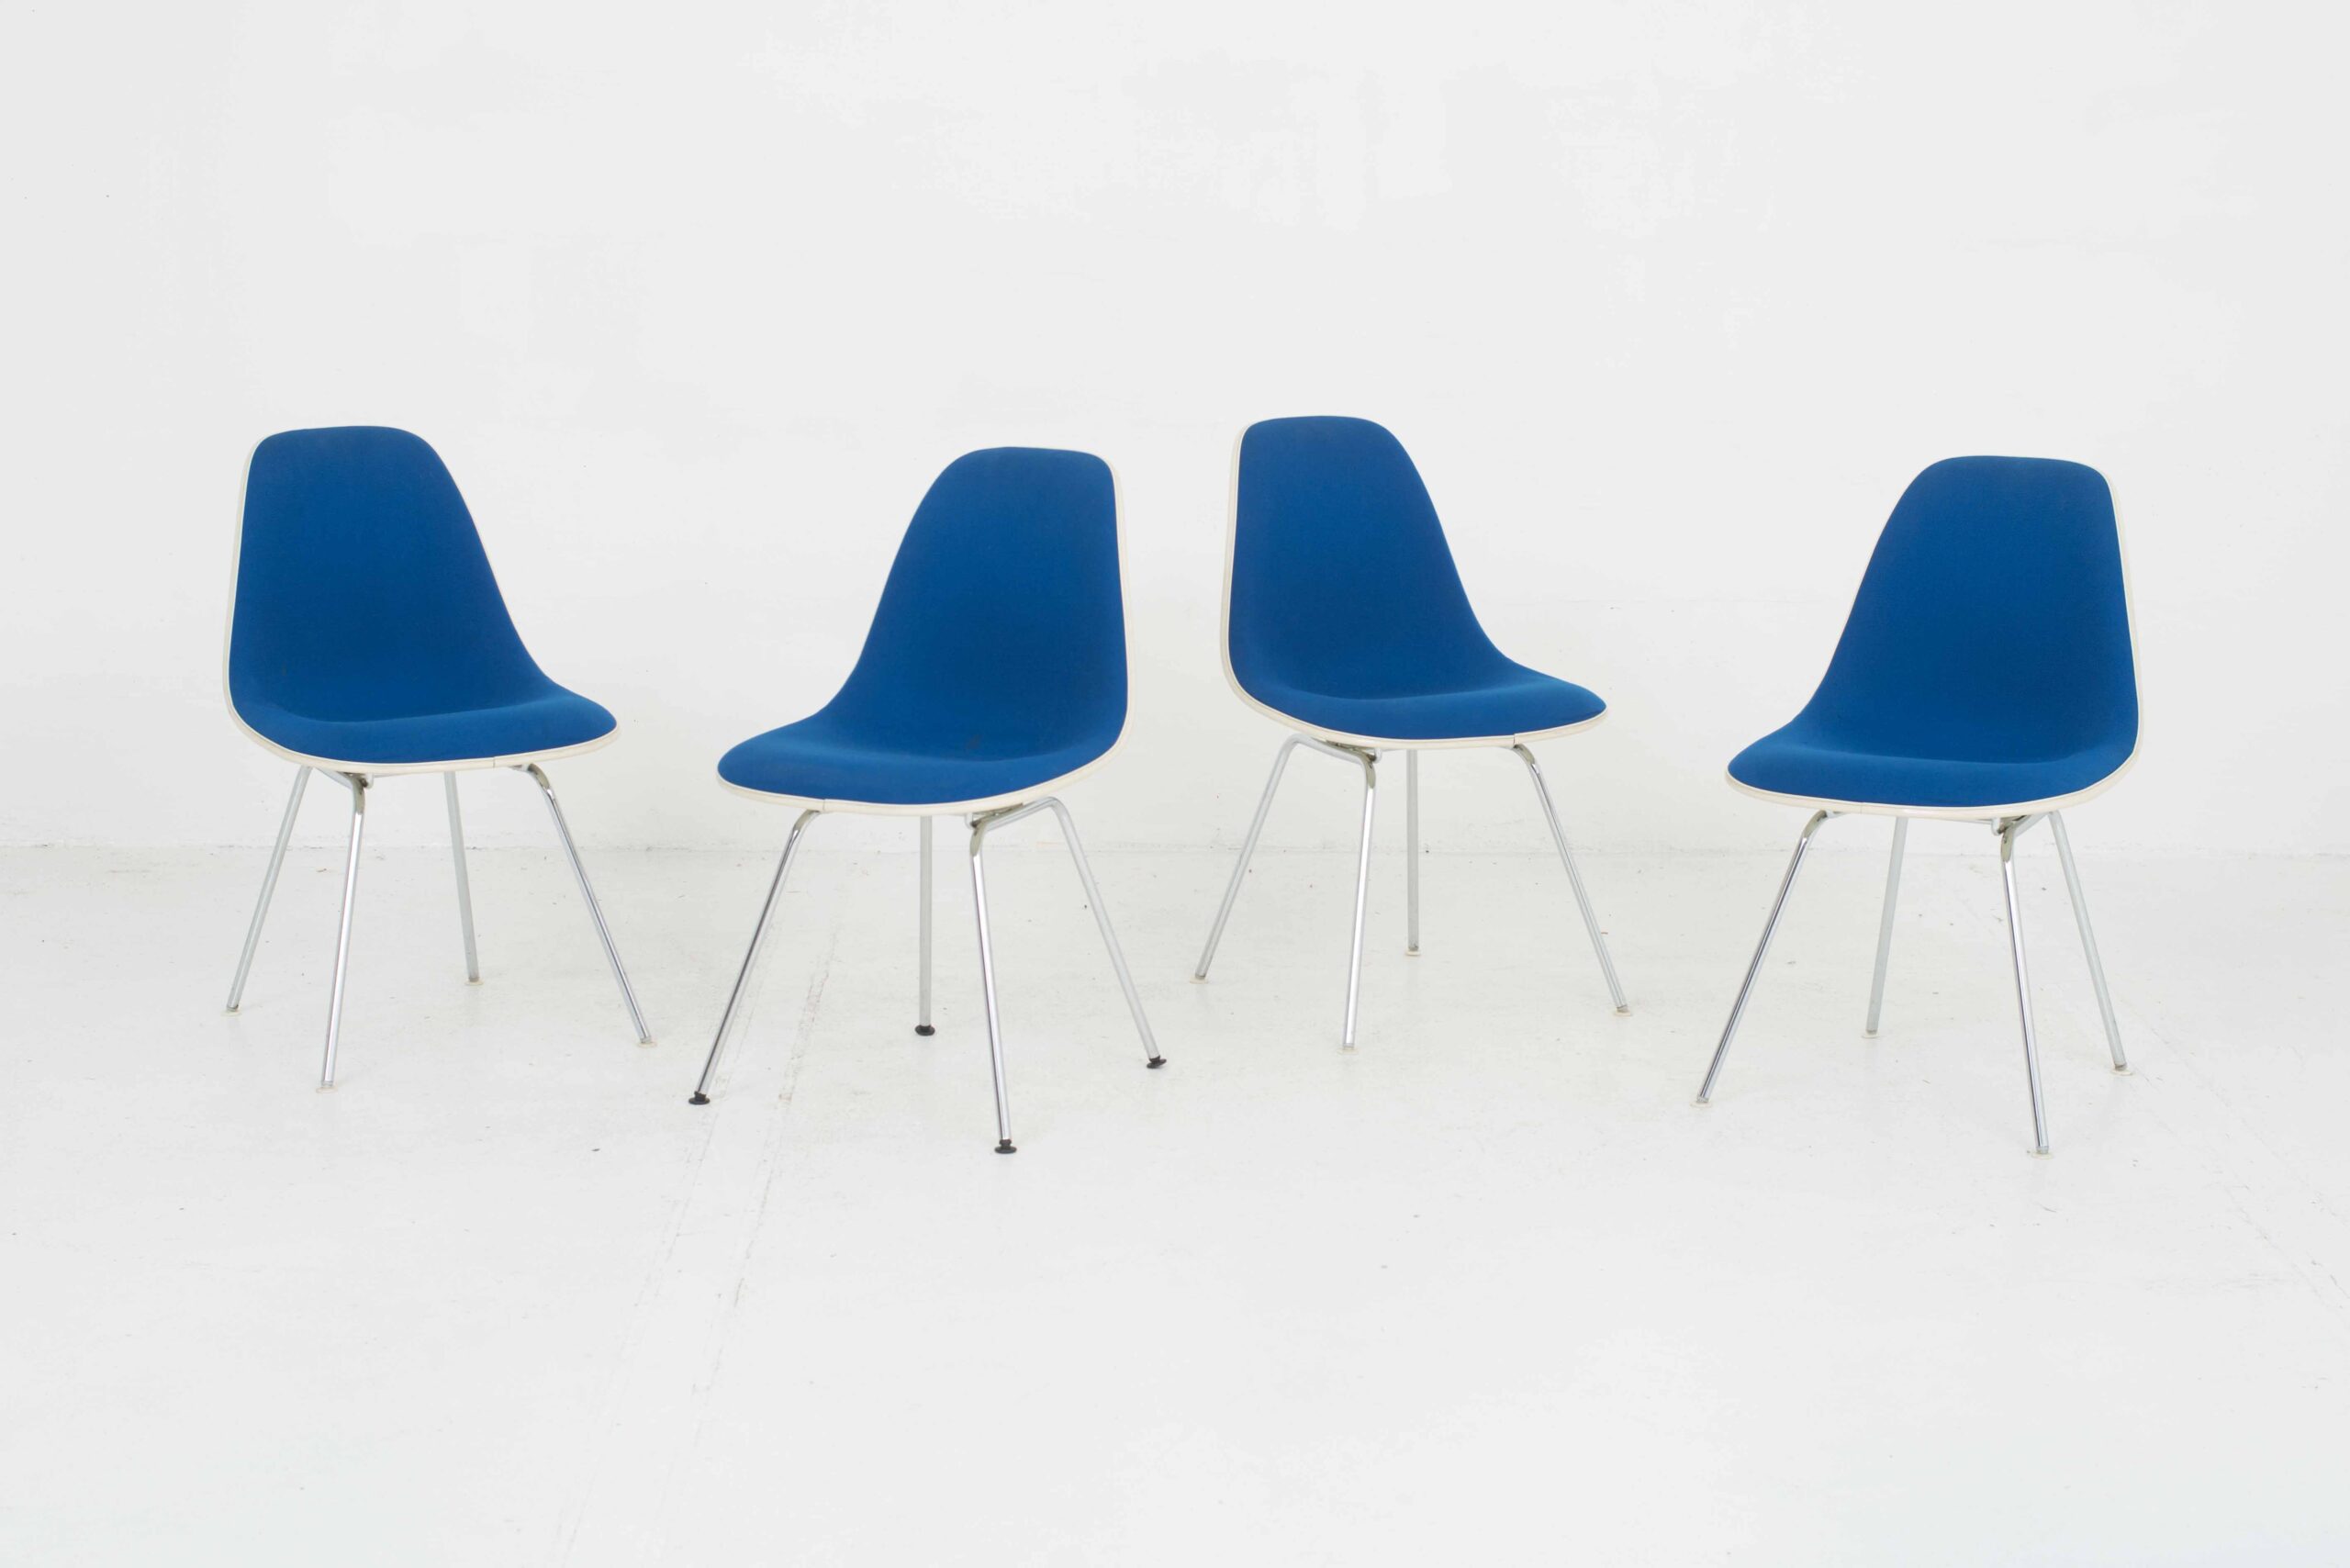 Eames Fiberglas Side Chairs von Vitra / Hermann Miller, im Viererset-0